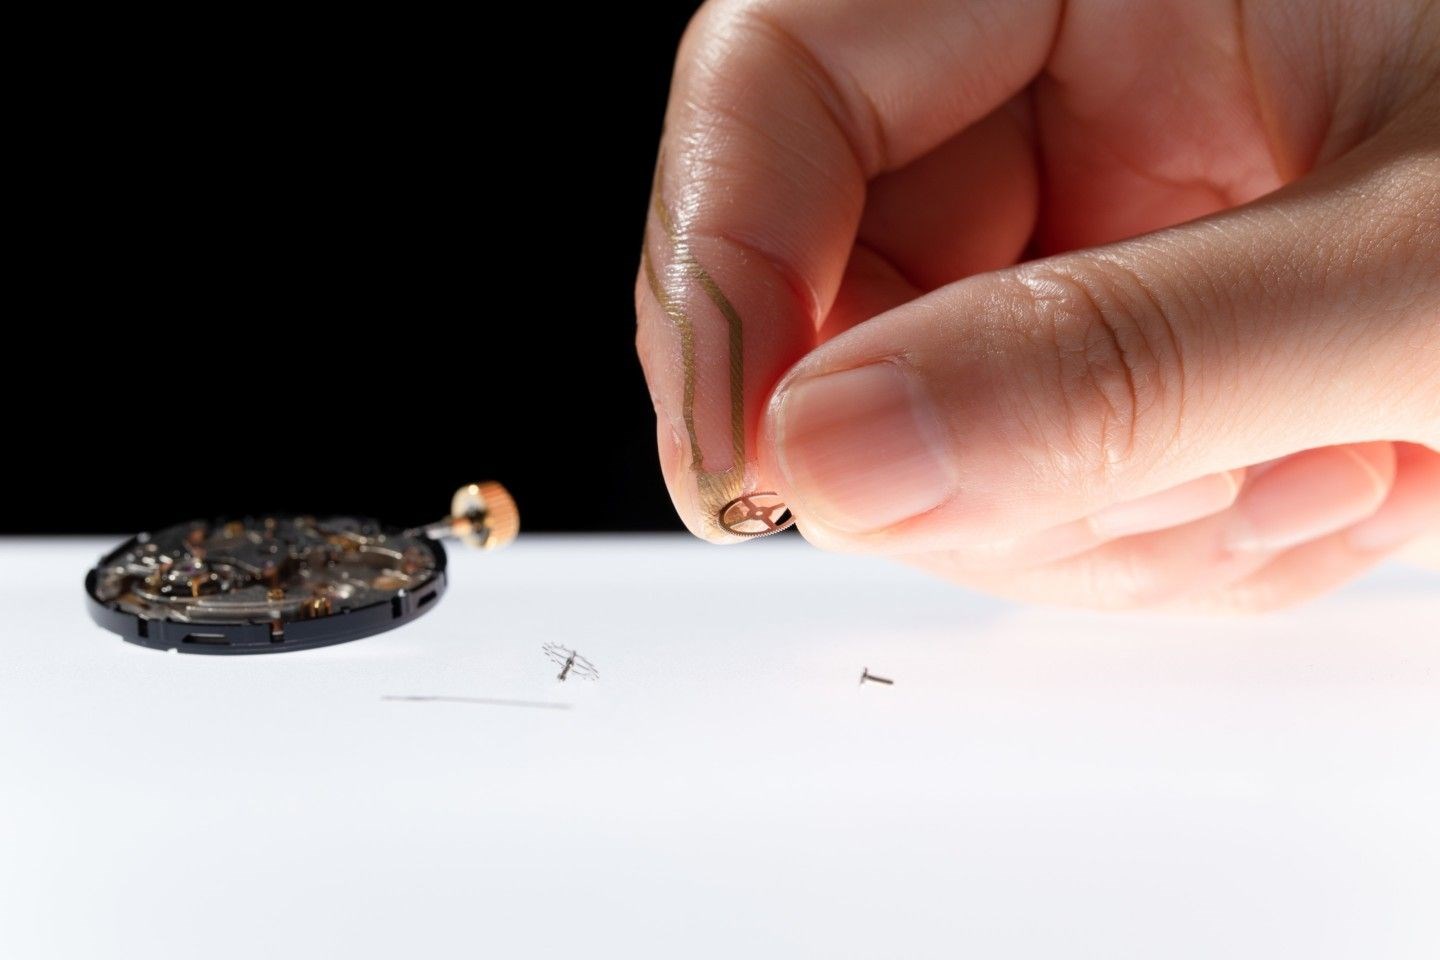 Küçük dokunuşları algılayabilen parmak sensörü geliştirildi